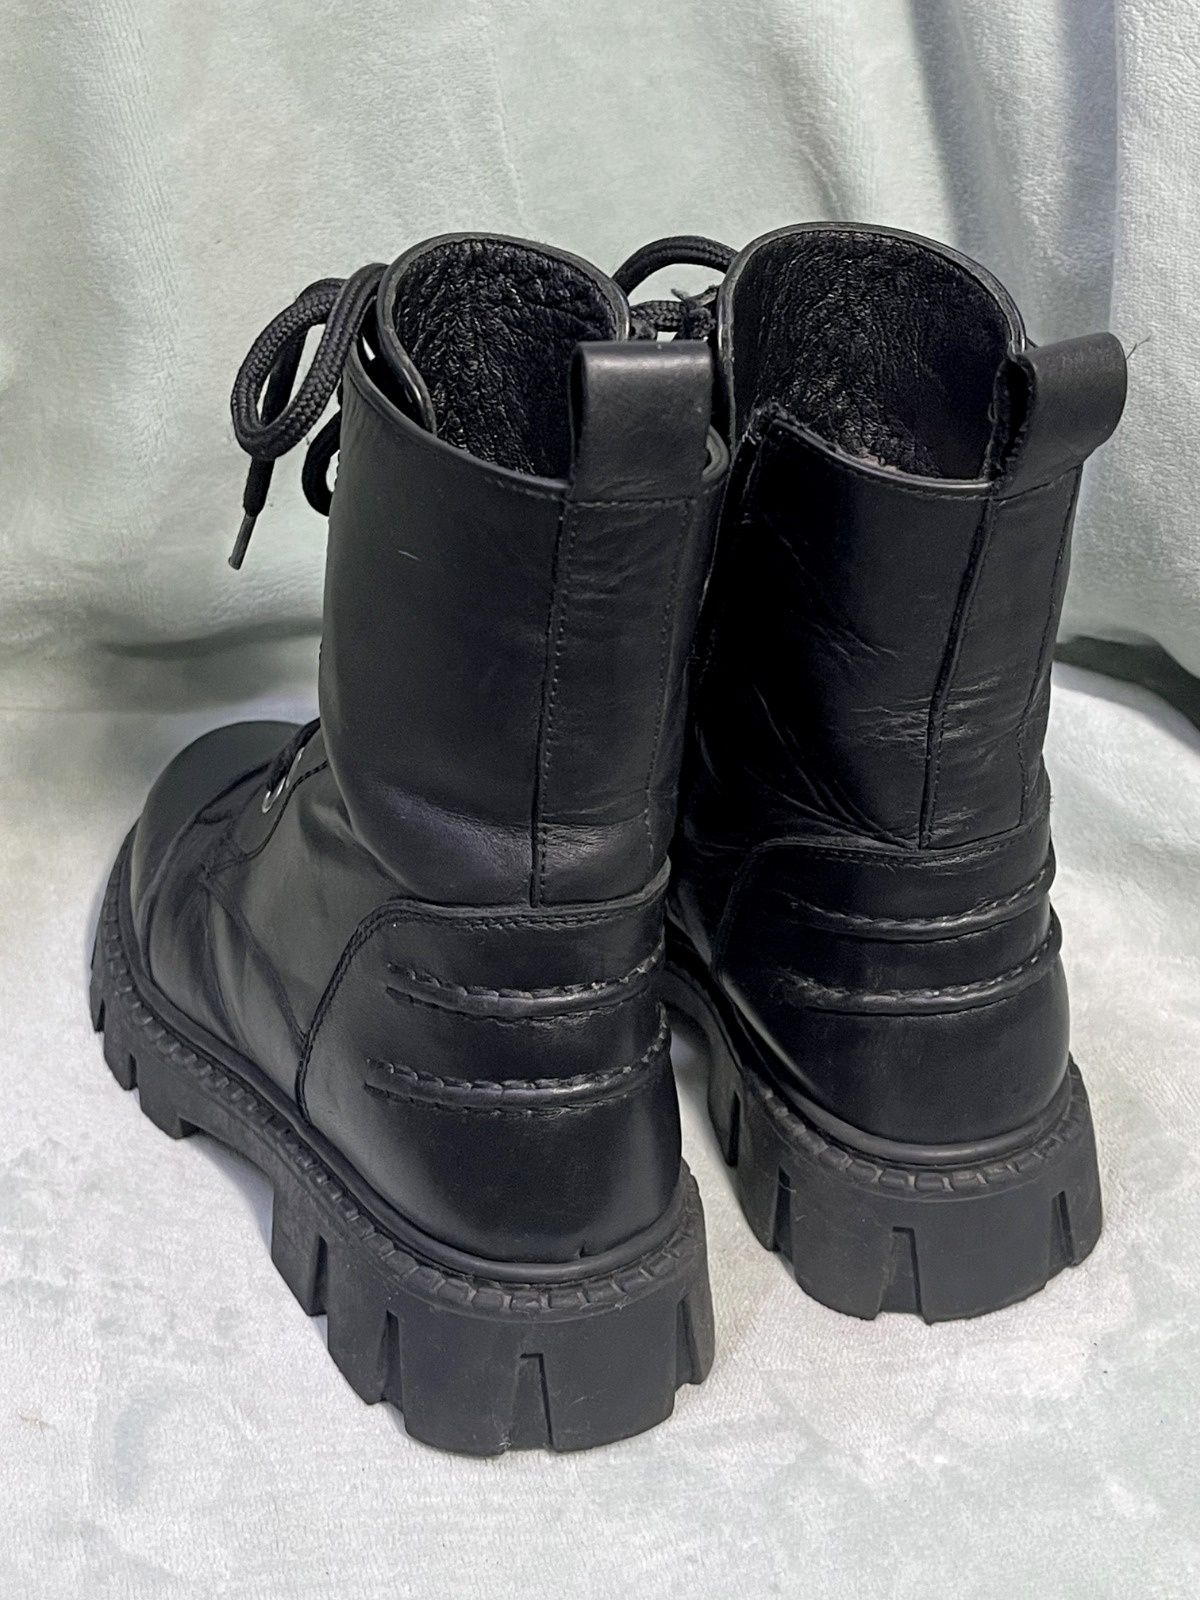 Продам зимние сапоги ботинки 33р из натуральной кожи на девочку